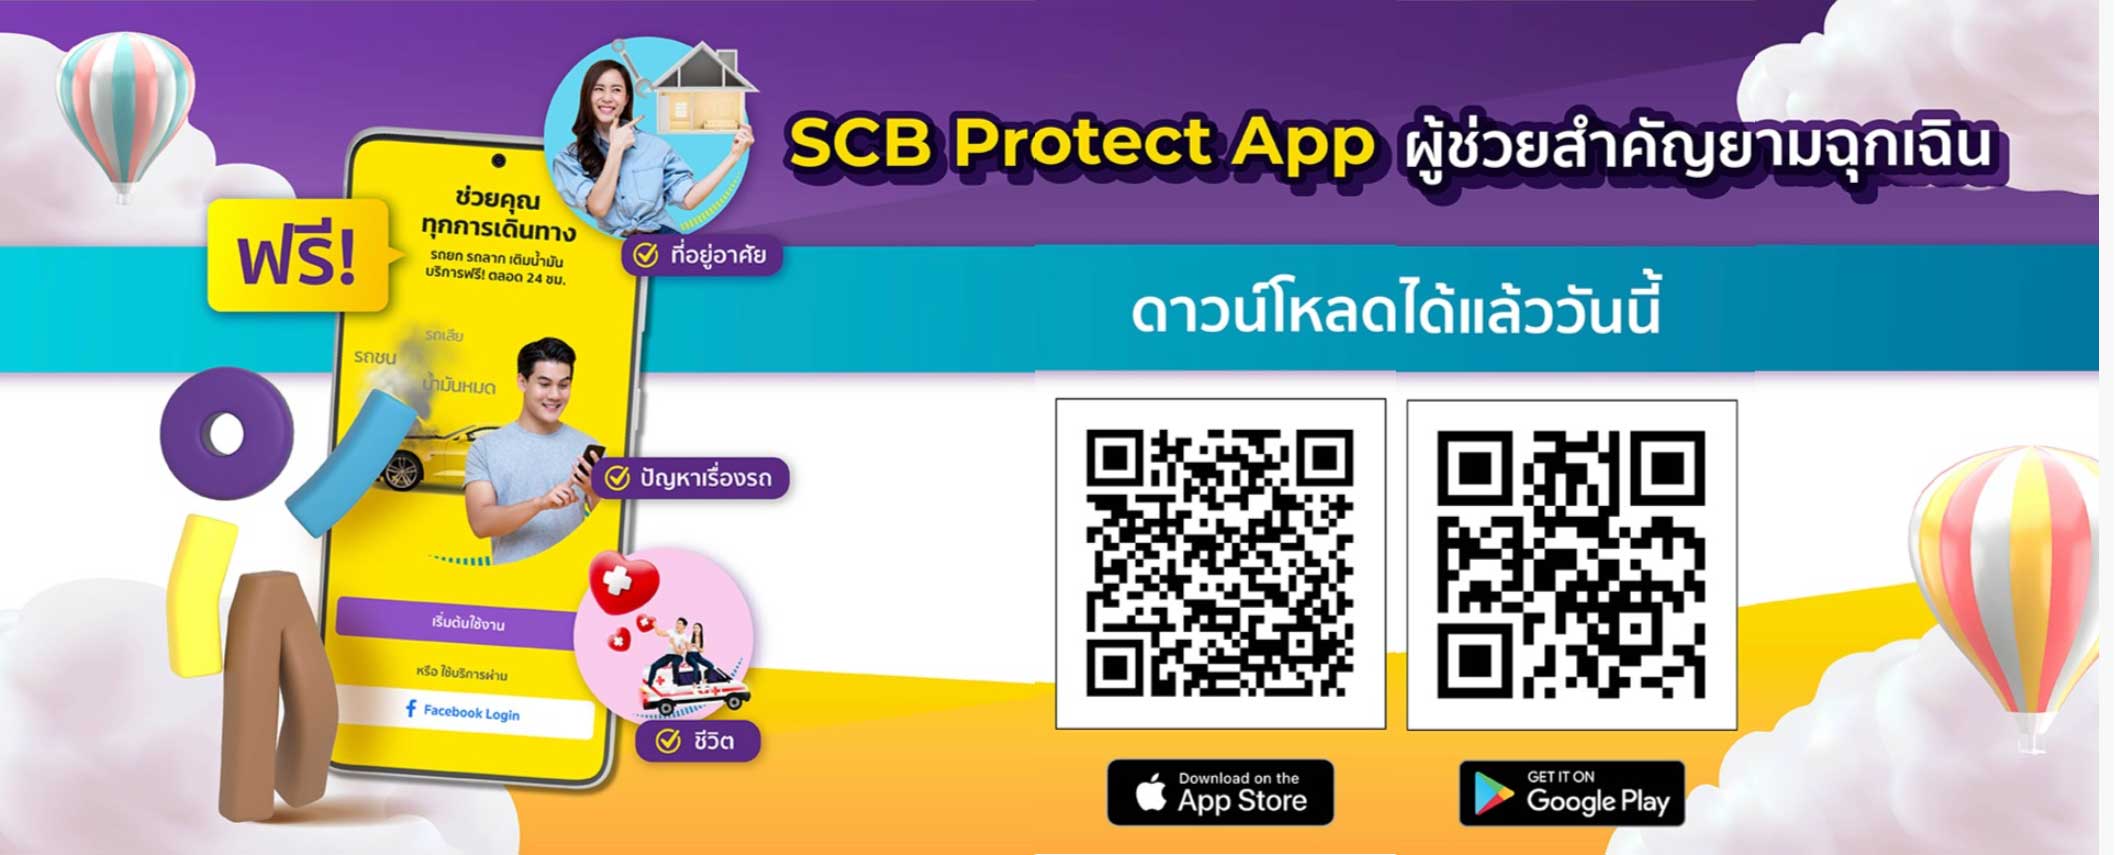 ฟรี! Scb Protect App ผู้ช่วยสำคัญยามฉุกเฉิน เมื่อซื้อประกันจาก Scb Protect